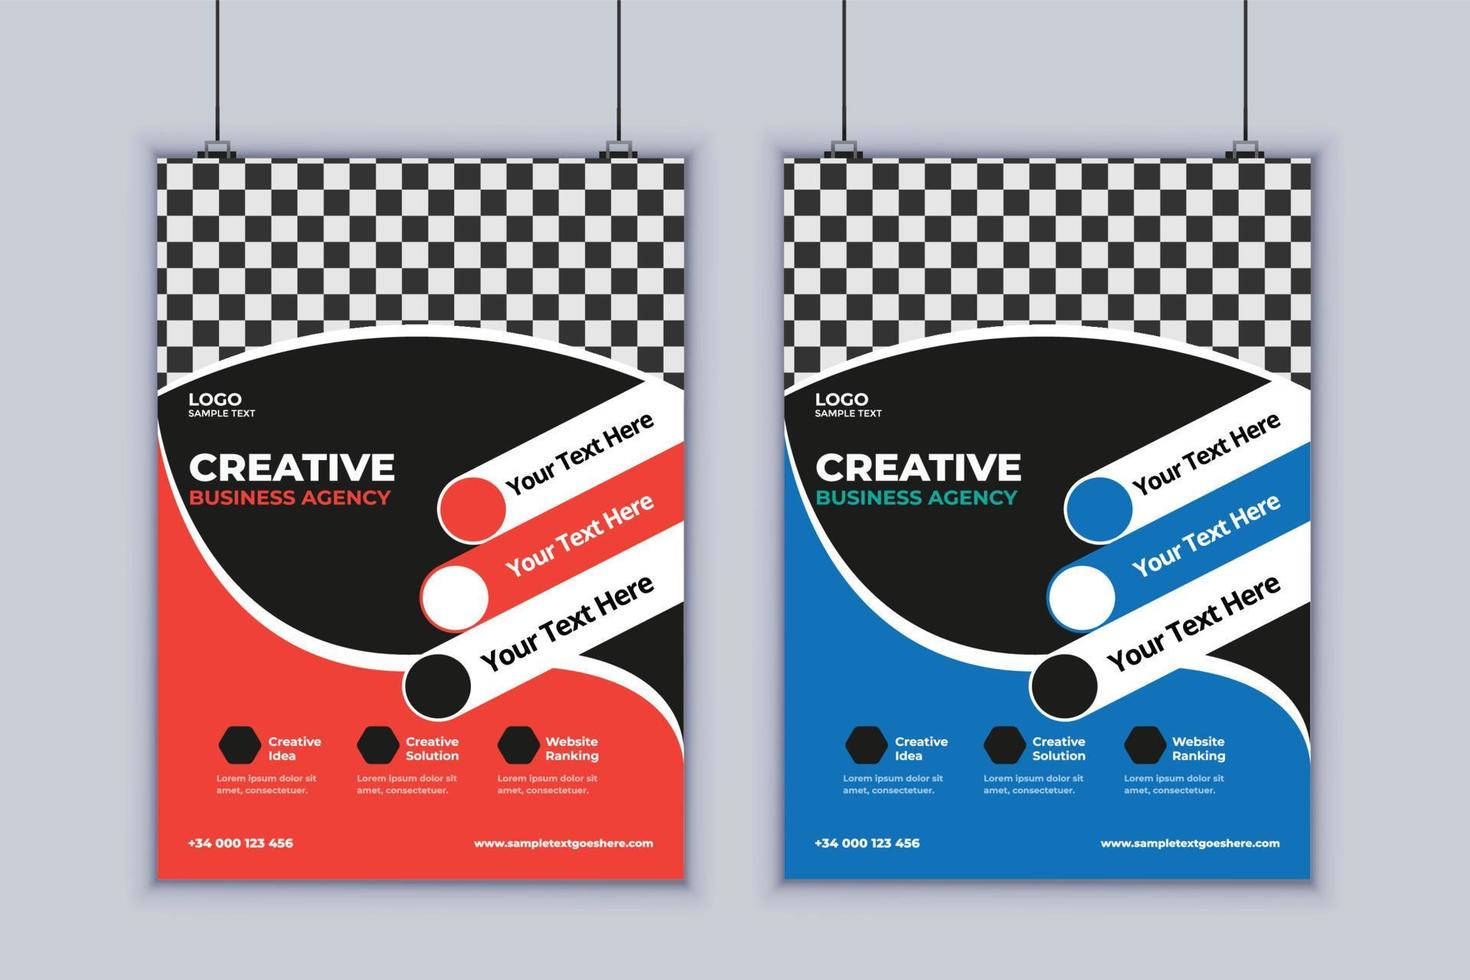 Digital Agency Flyer Design. Business Flyer Design. Vector Design Template. 2 Page Flyer Design. Modern Layout